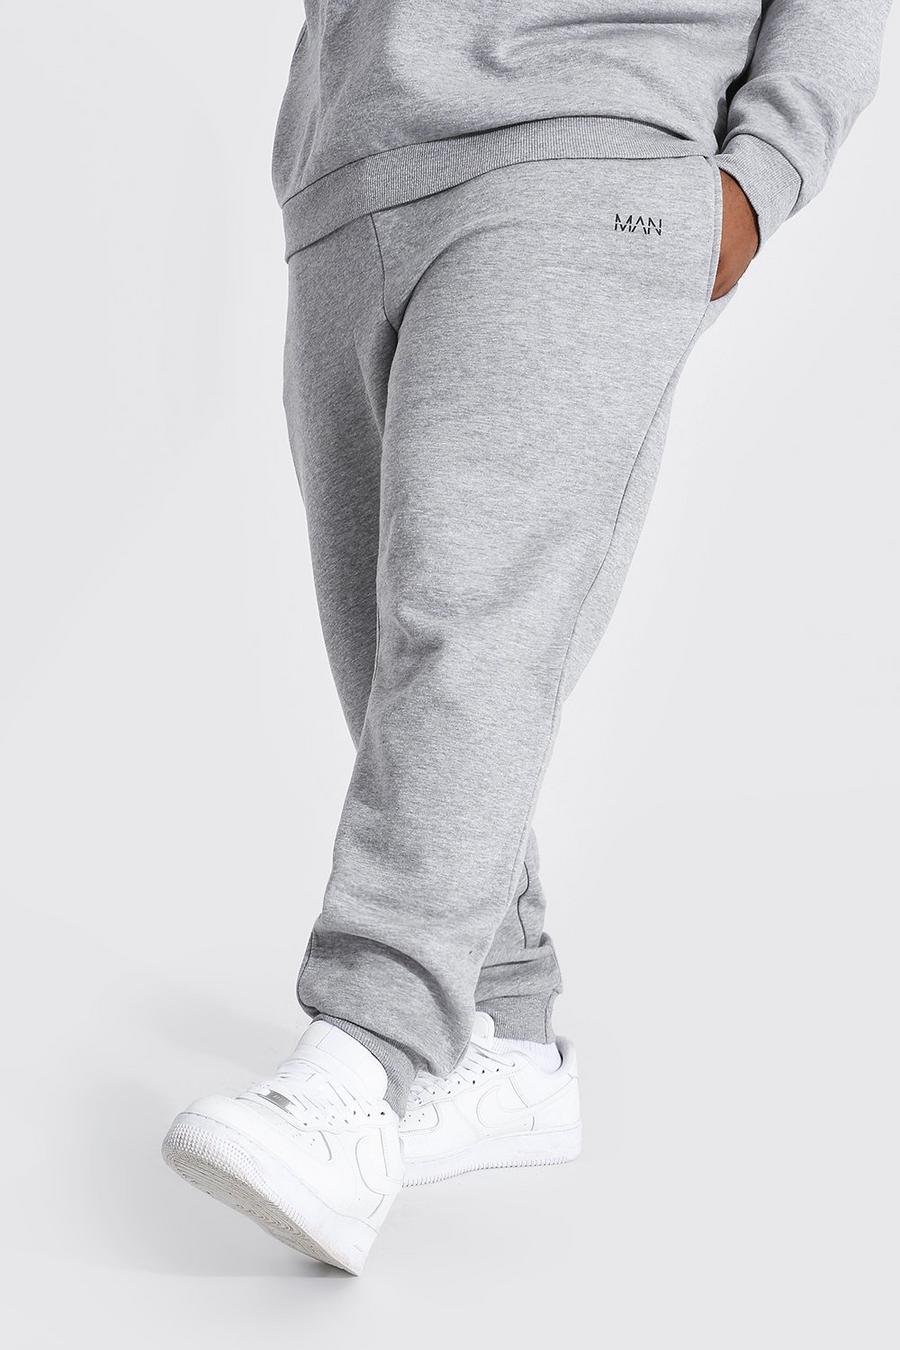 Pantalón deportivo Plus MAN ajustado reciclado, Grey marl grigio